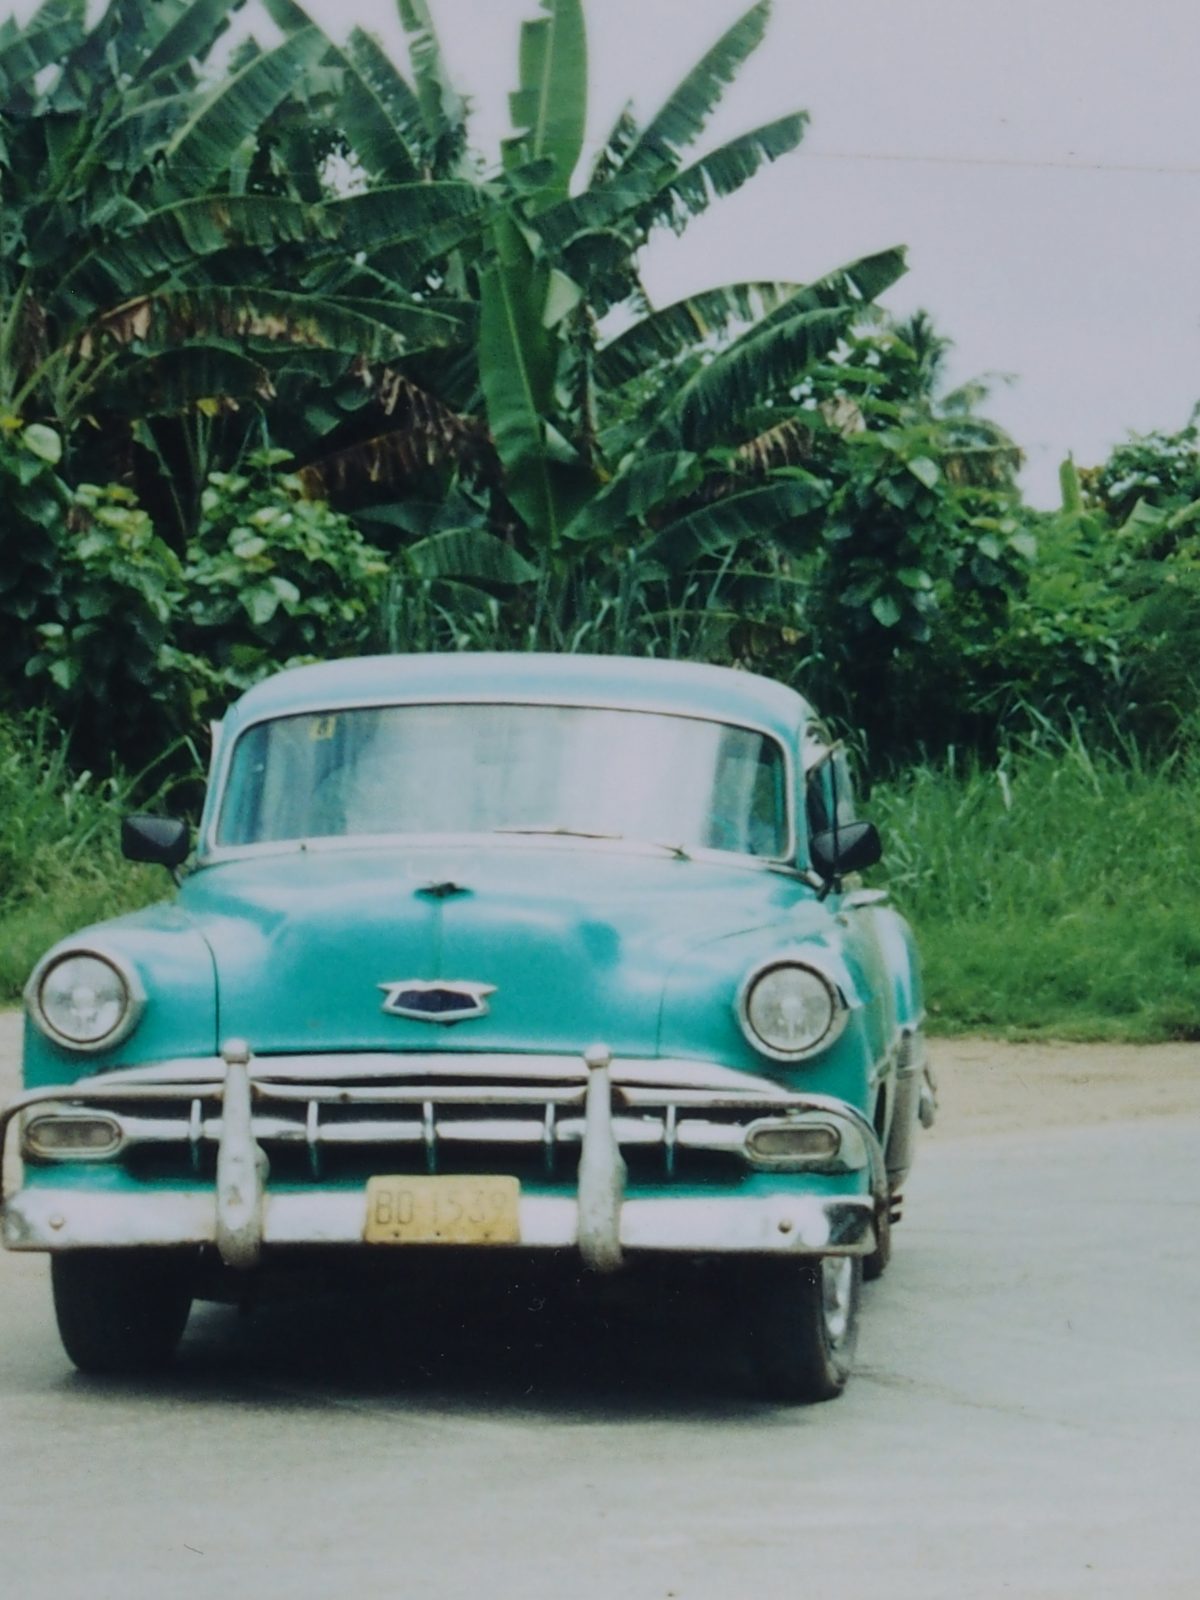 Cuba 2001